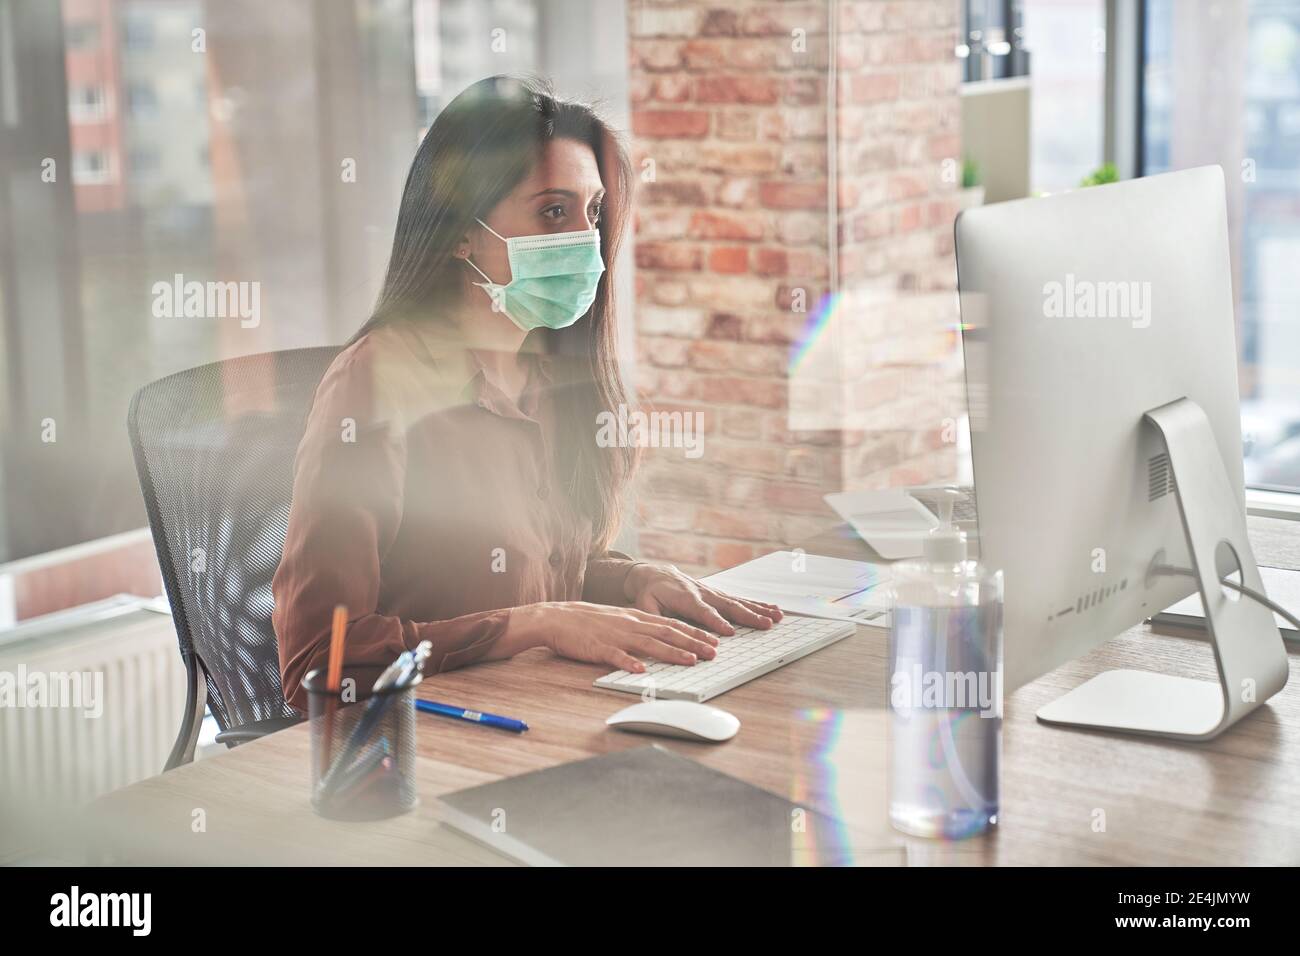 Femme adulte de taille moyenne travaillant sur un ordinateur de bureau vu à travers le verre pendant une pandémie Banque D'Images